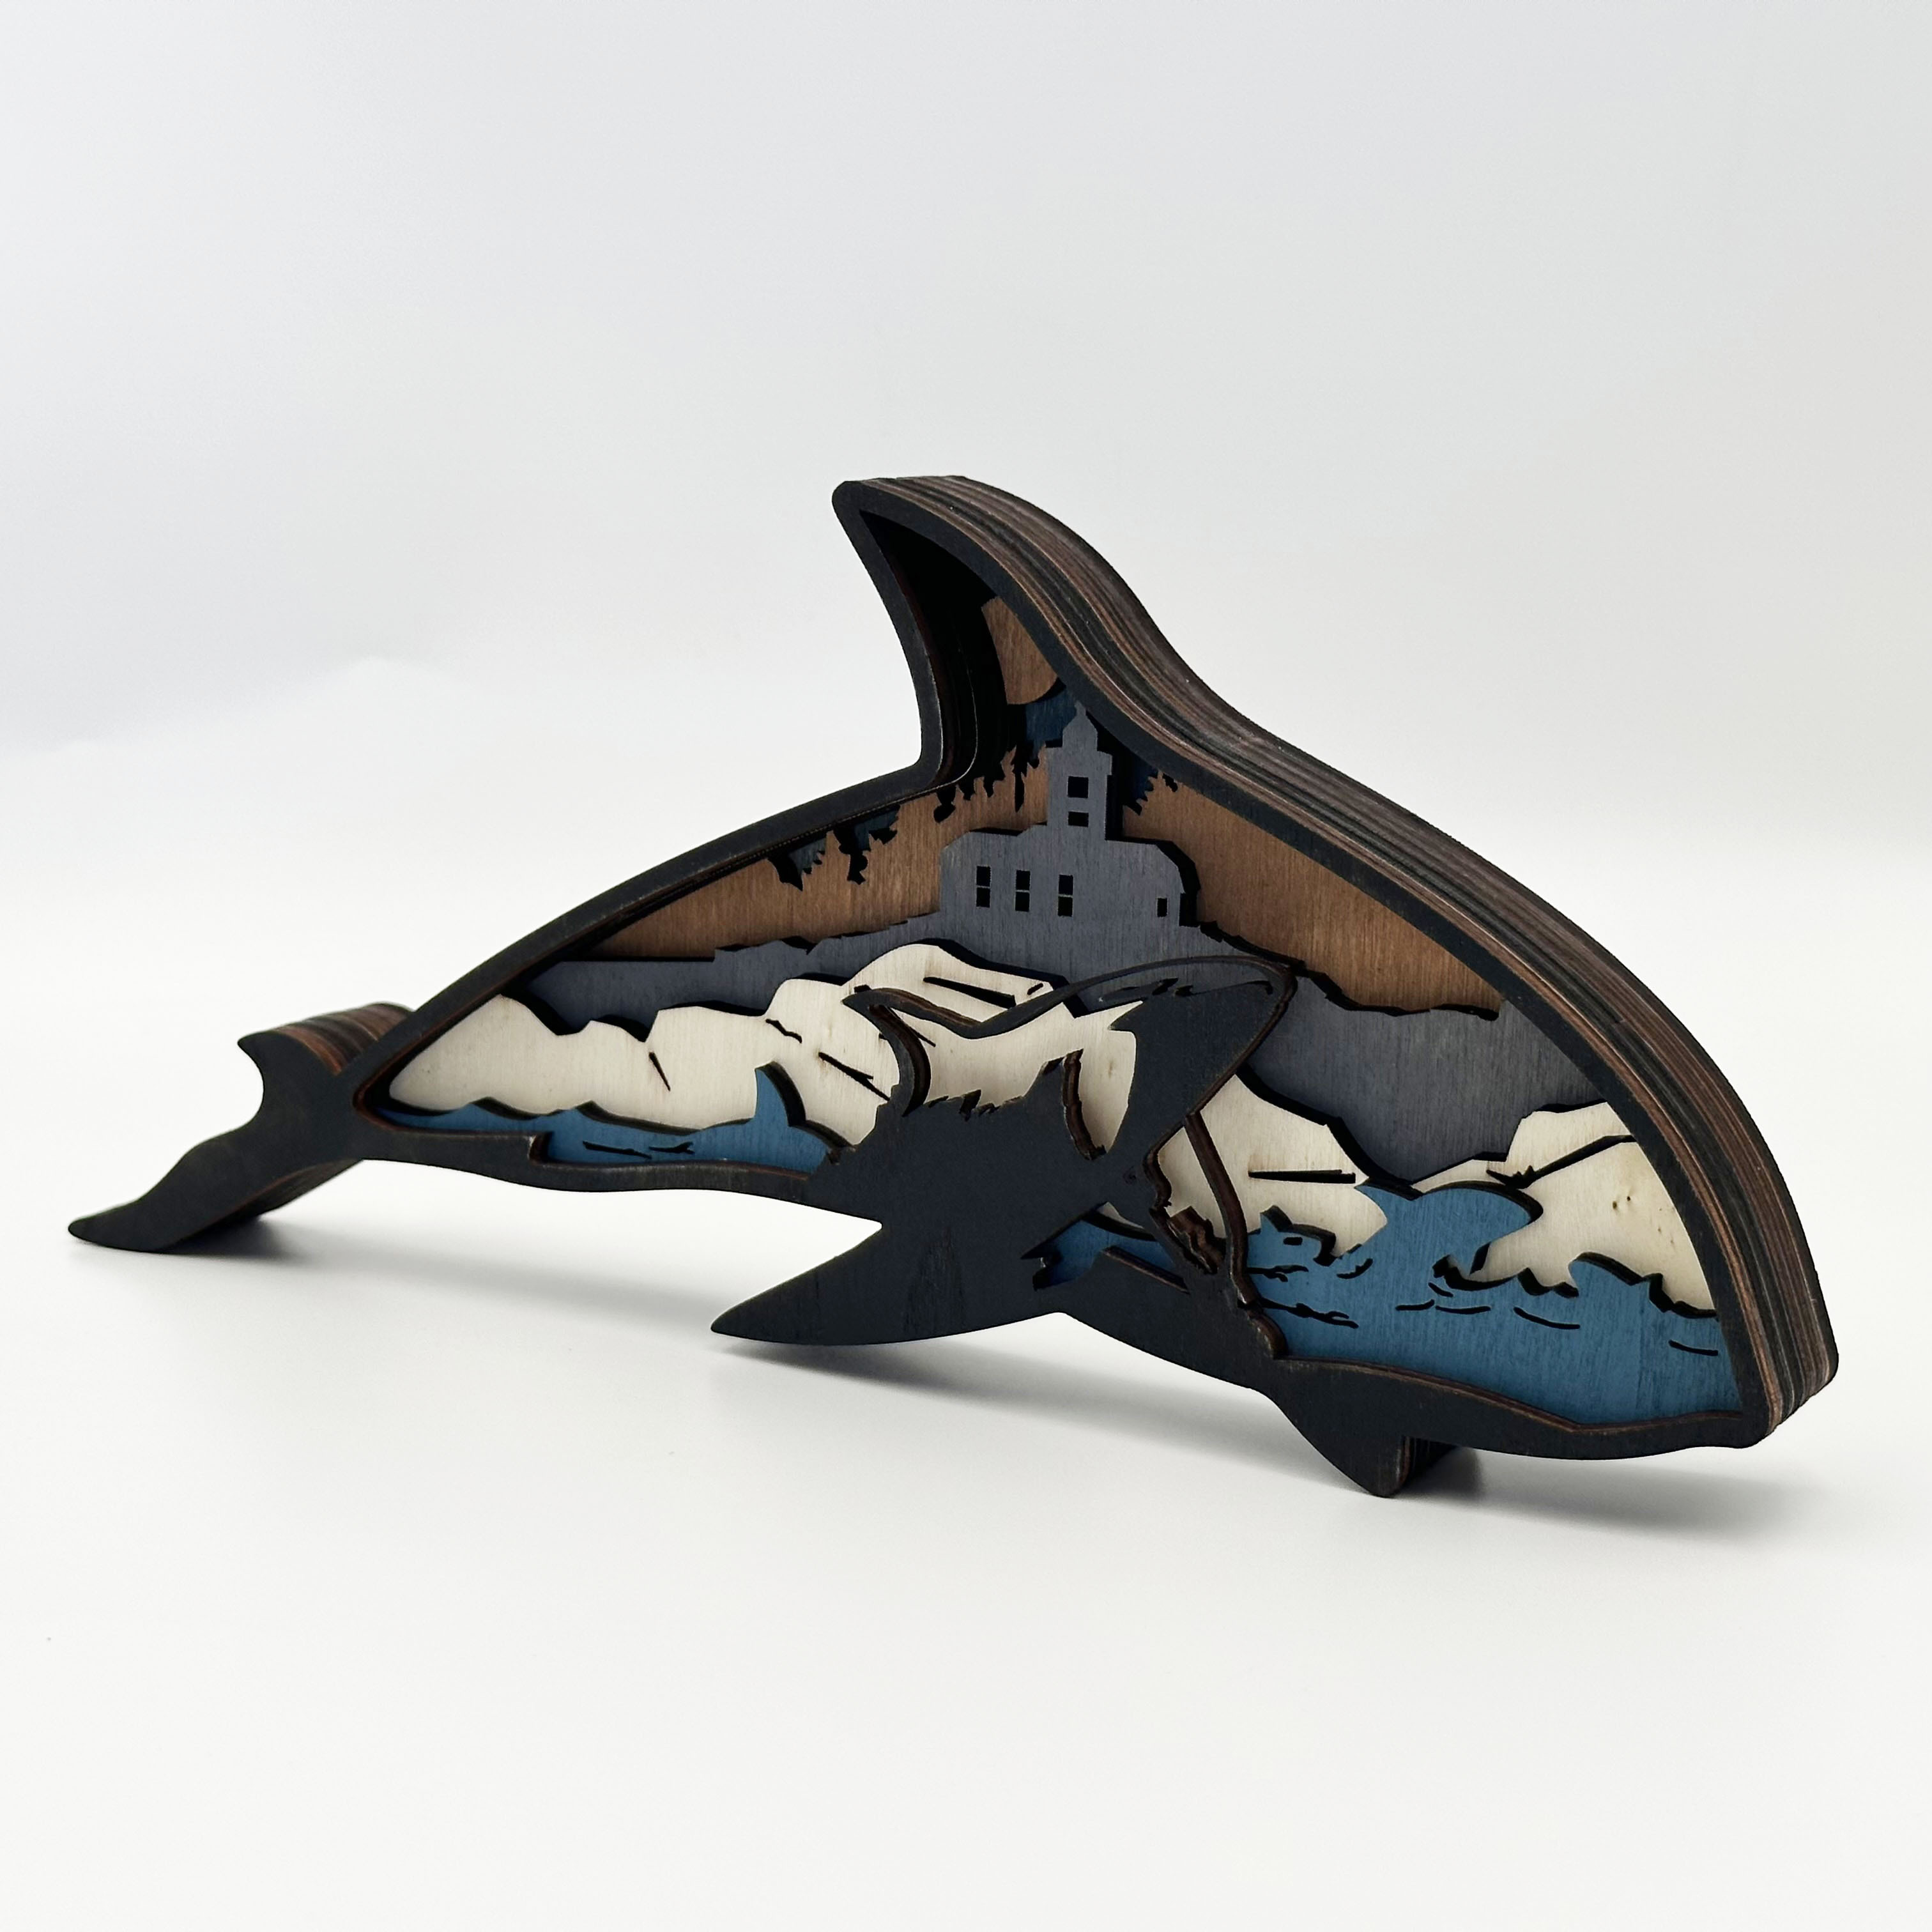 Achetez cette découpe de dauphin en bois sautant, énorme créature océanique  artisanat inachevé, peinture par ligne, bricolage gravé forme d’artisanat